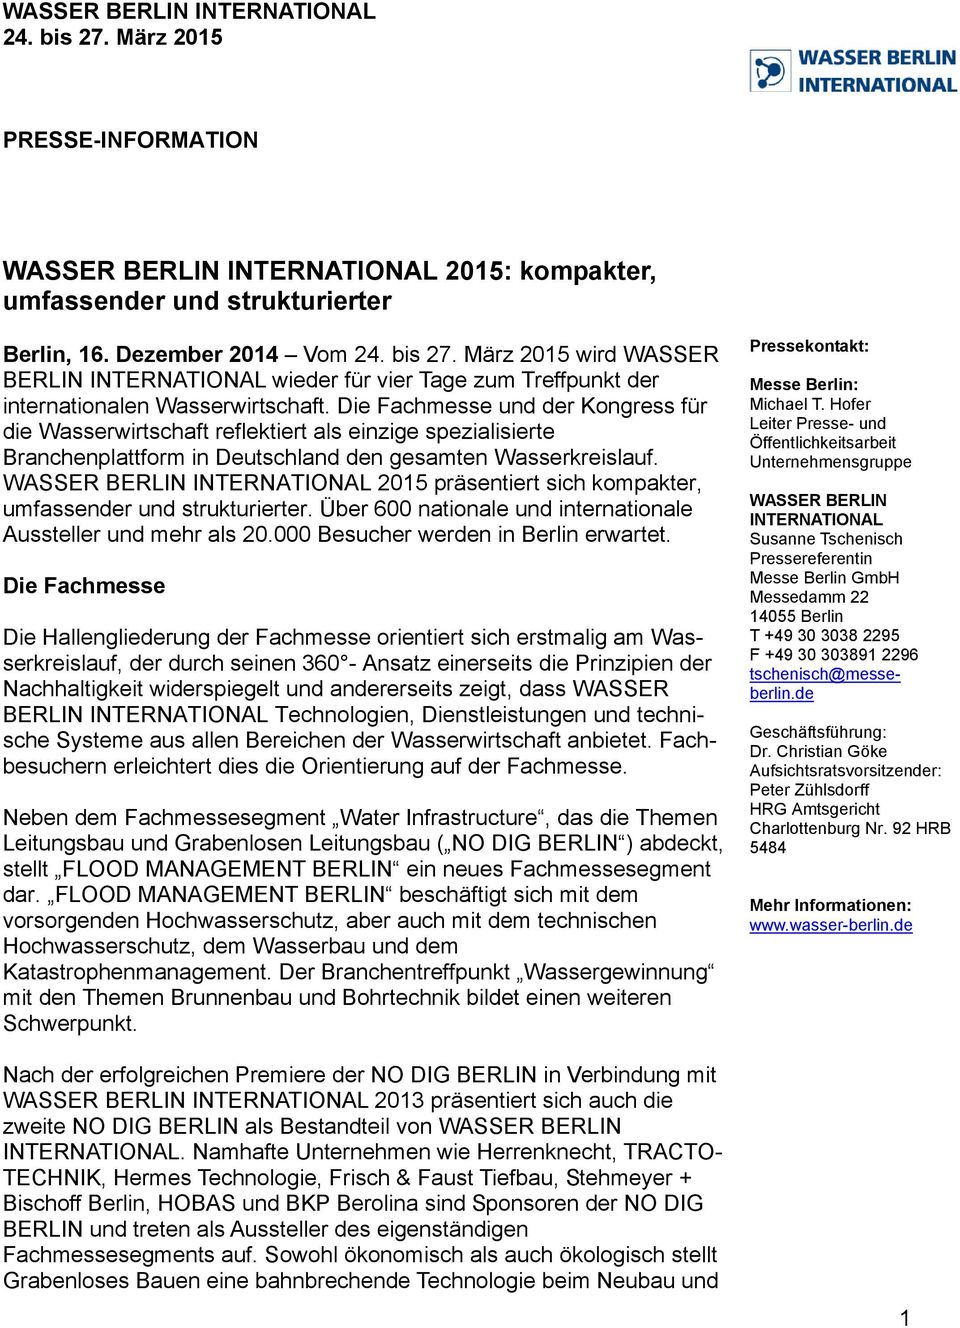 WASSER BERLIN INTERNATIONAL 2015 präsentiert sich kompakter, umfassender und strukturierter. Über 600 nationale und internationale Aussteller und mehr als 20.000 Besucher werden in Berlin erwartet.